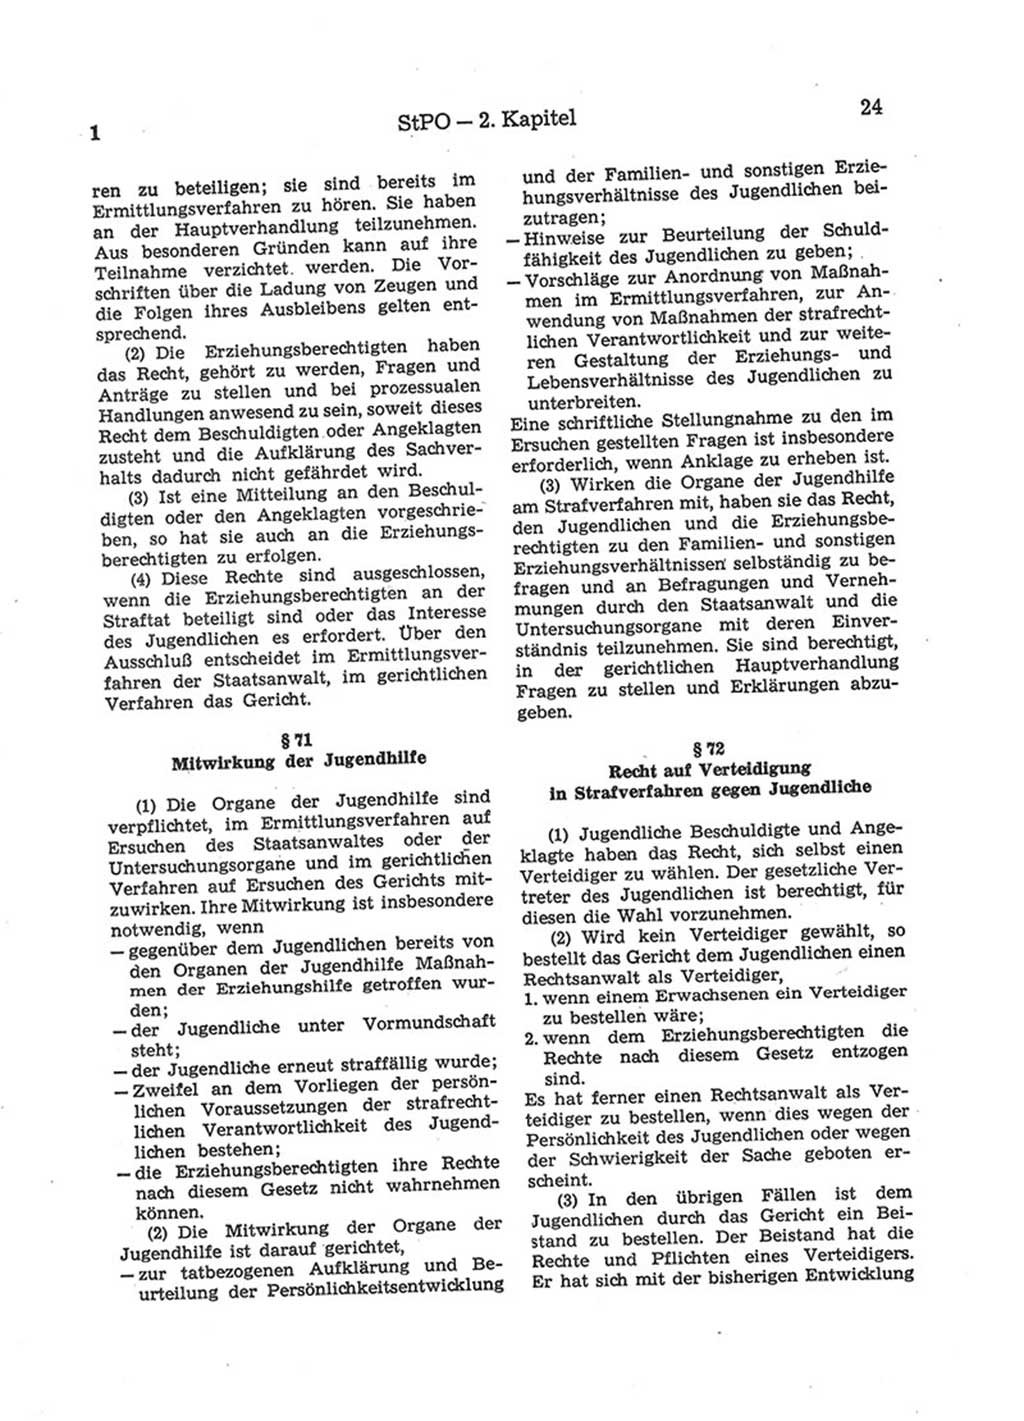 Strafprozeßordnung (StPO) der Deutschen Demokratischen Republik (DDR) 1975, Seite 24 (StPO DDR 1974, S. 24)